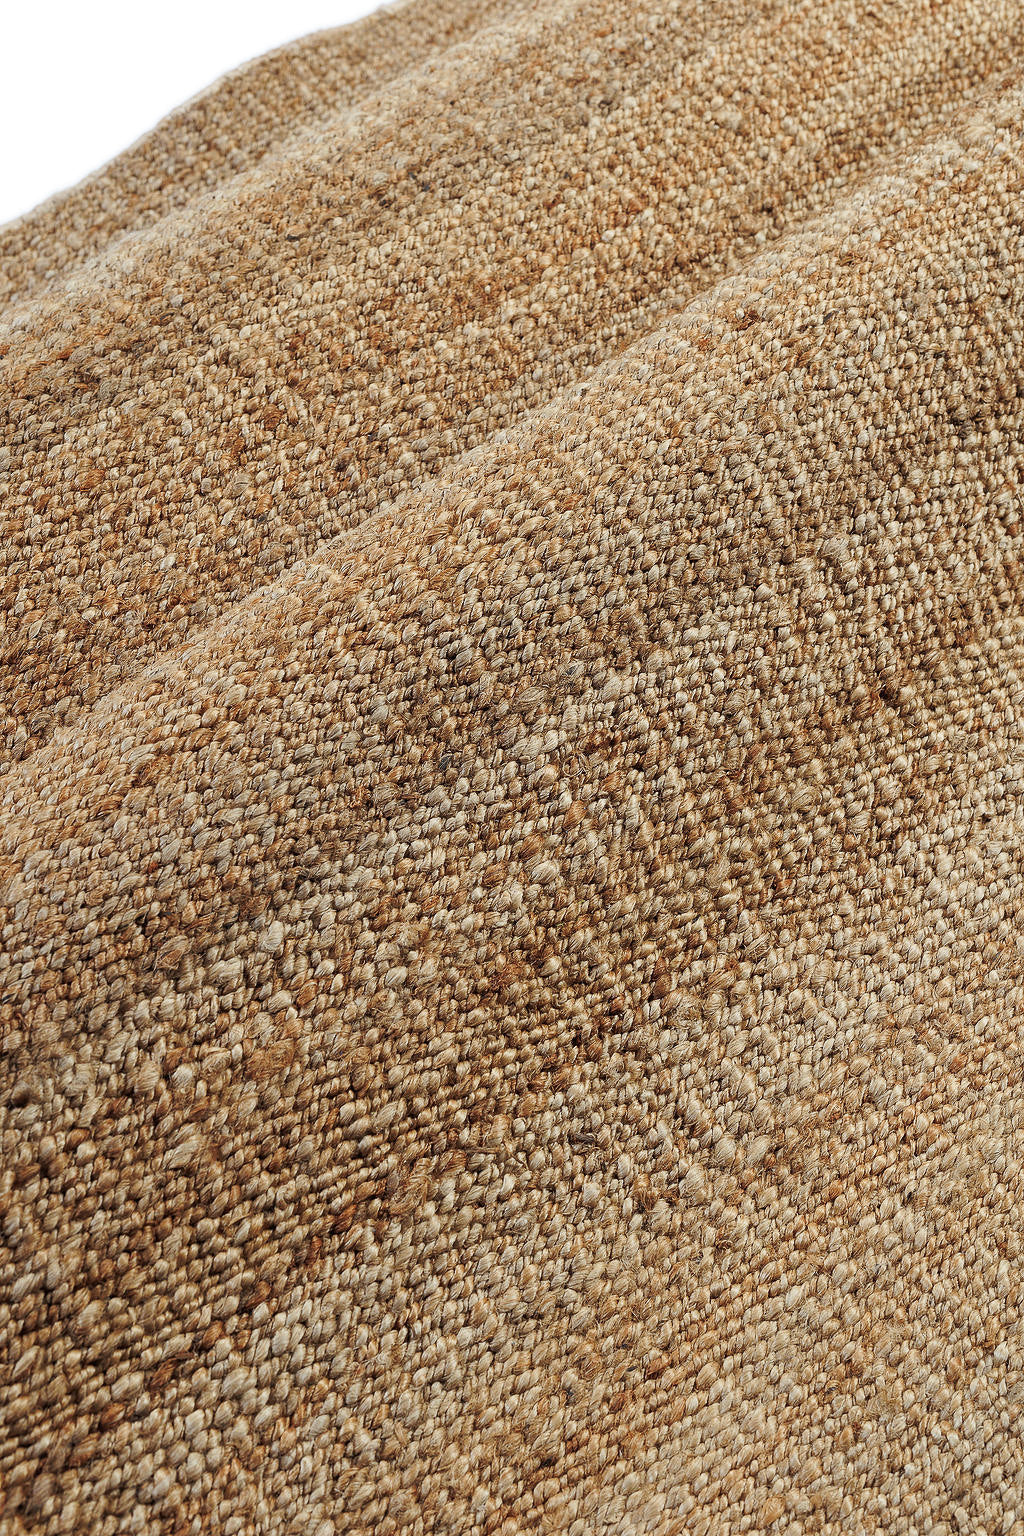 Plain brown woven rug